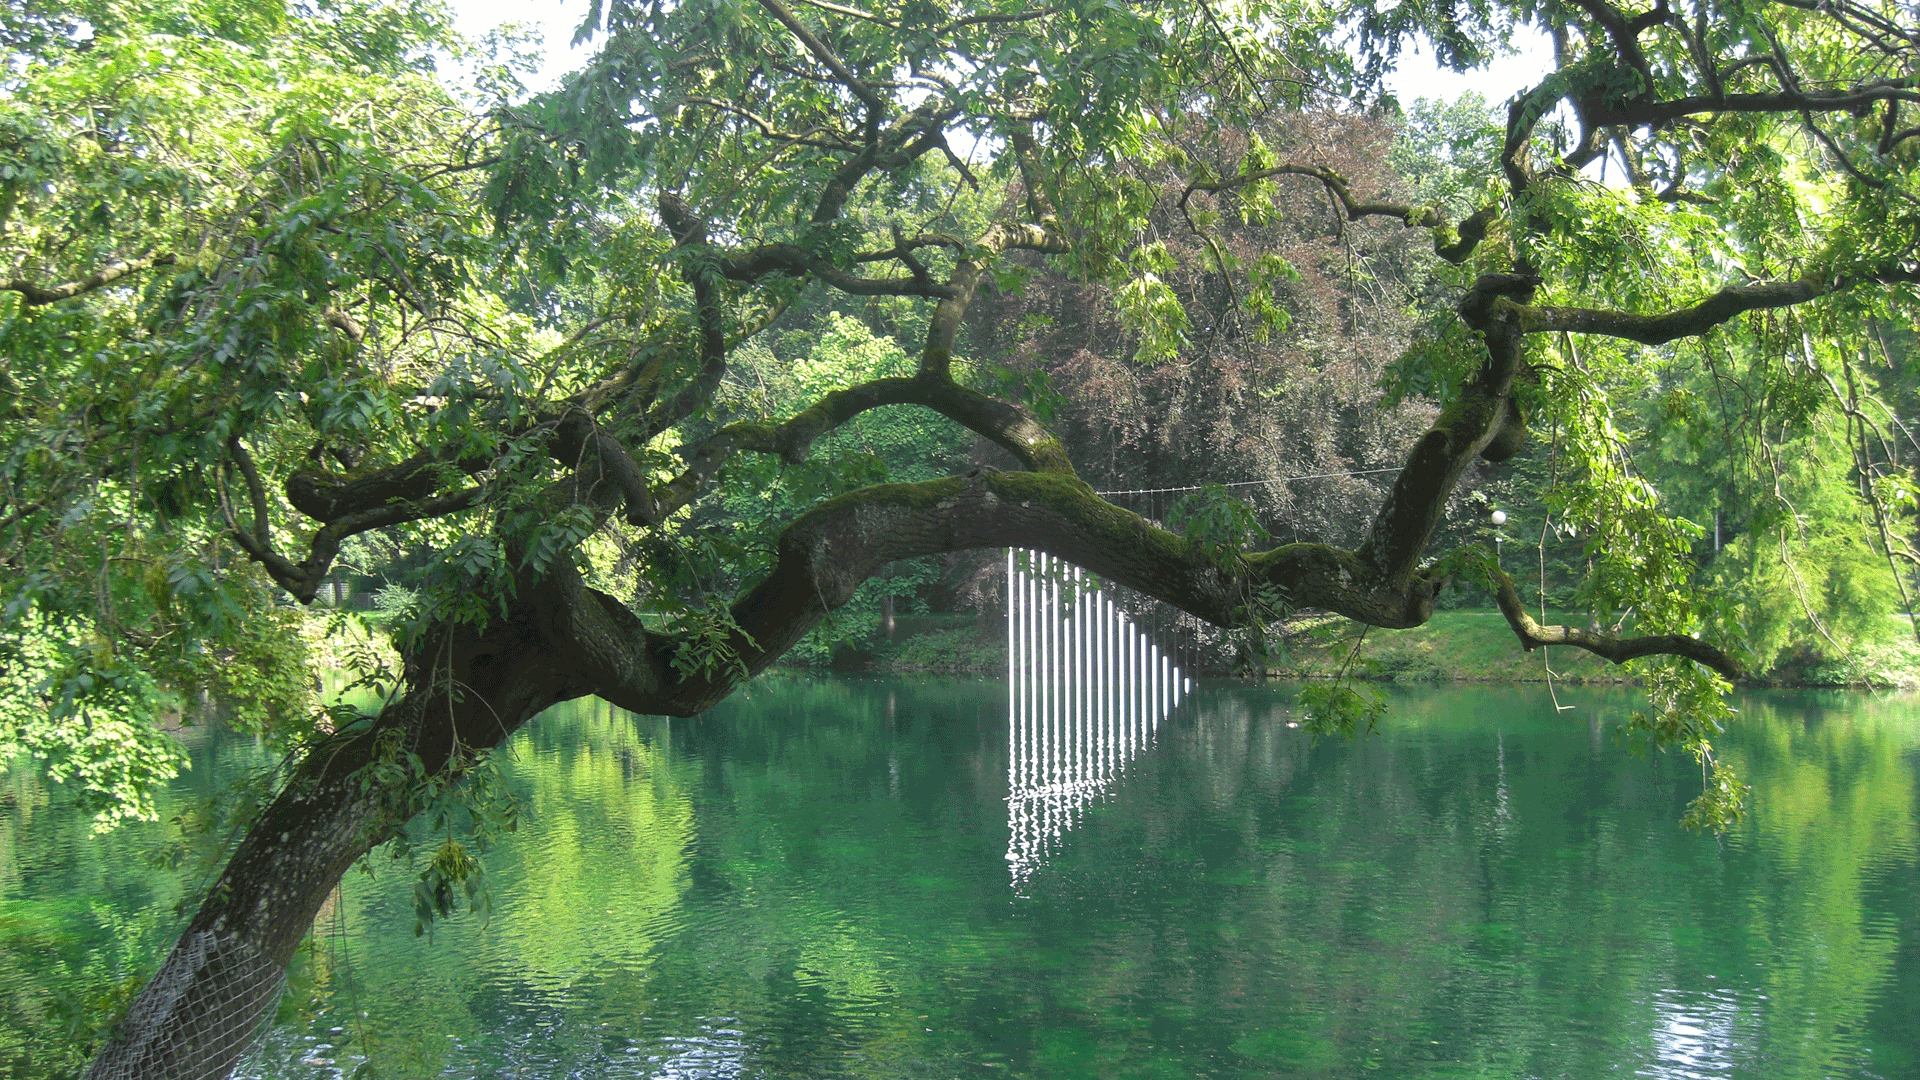 Ein alter über das Wasser des Ausees hängender Baum